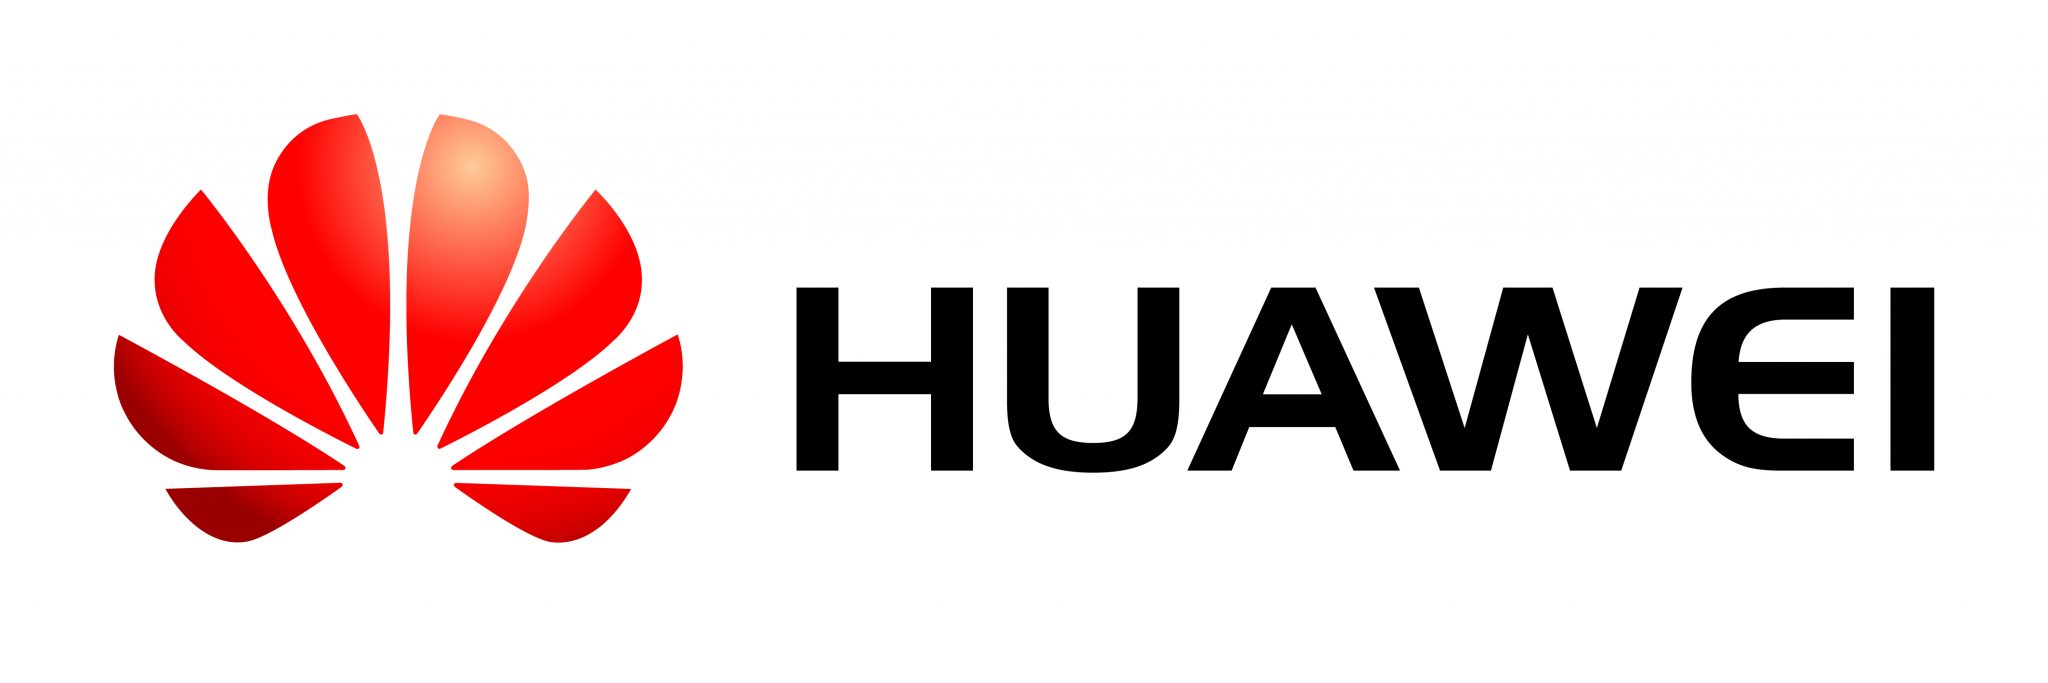 huawei_logo-2